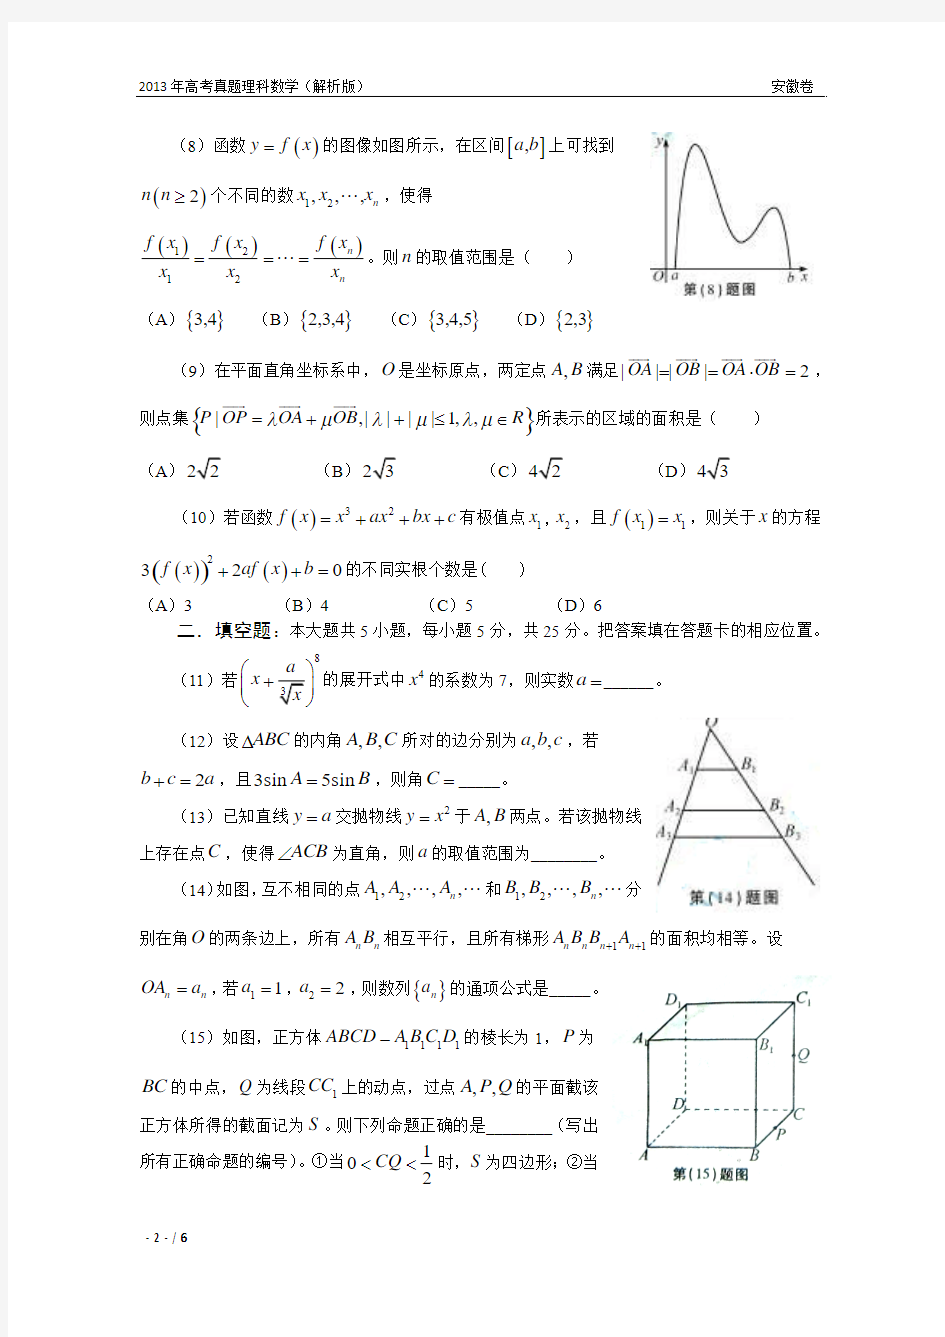 13年高考真题——理科数学(安徽卷)